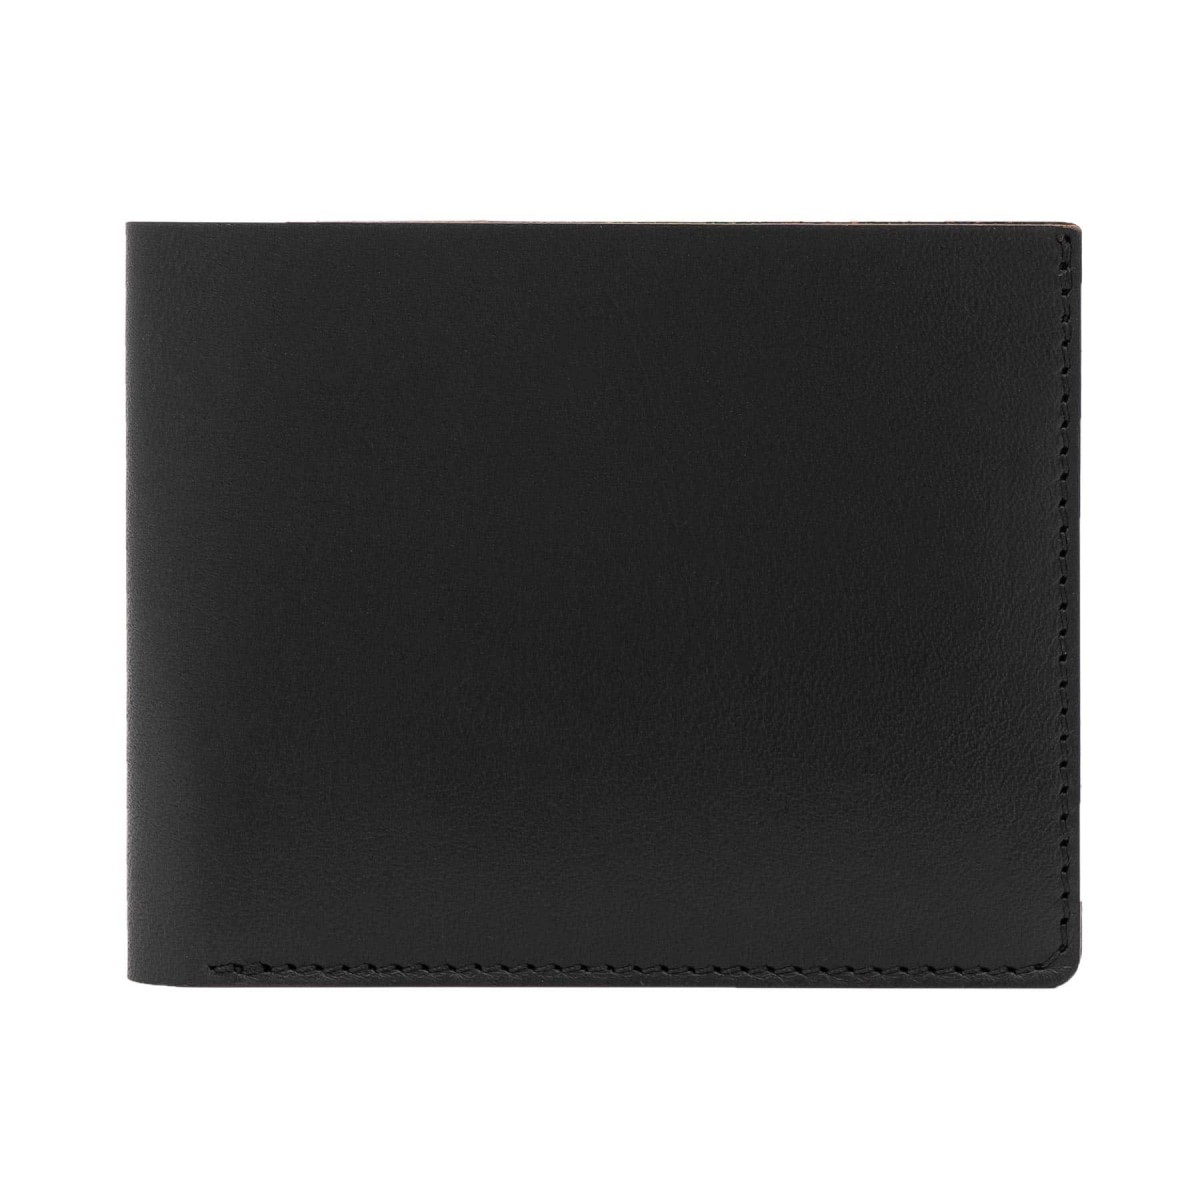 Faltbare Geldbörse in schwarz - aus premium pflanzlich gegerbtem Leder